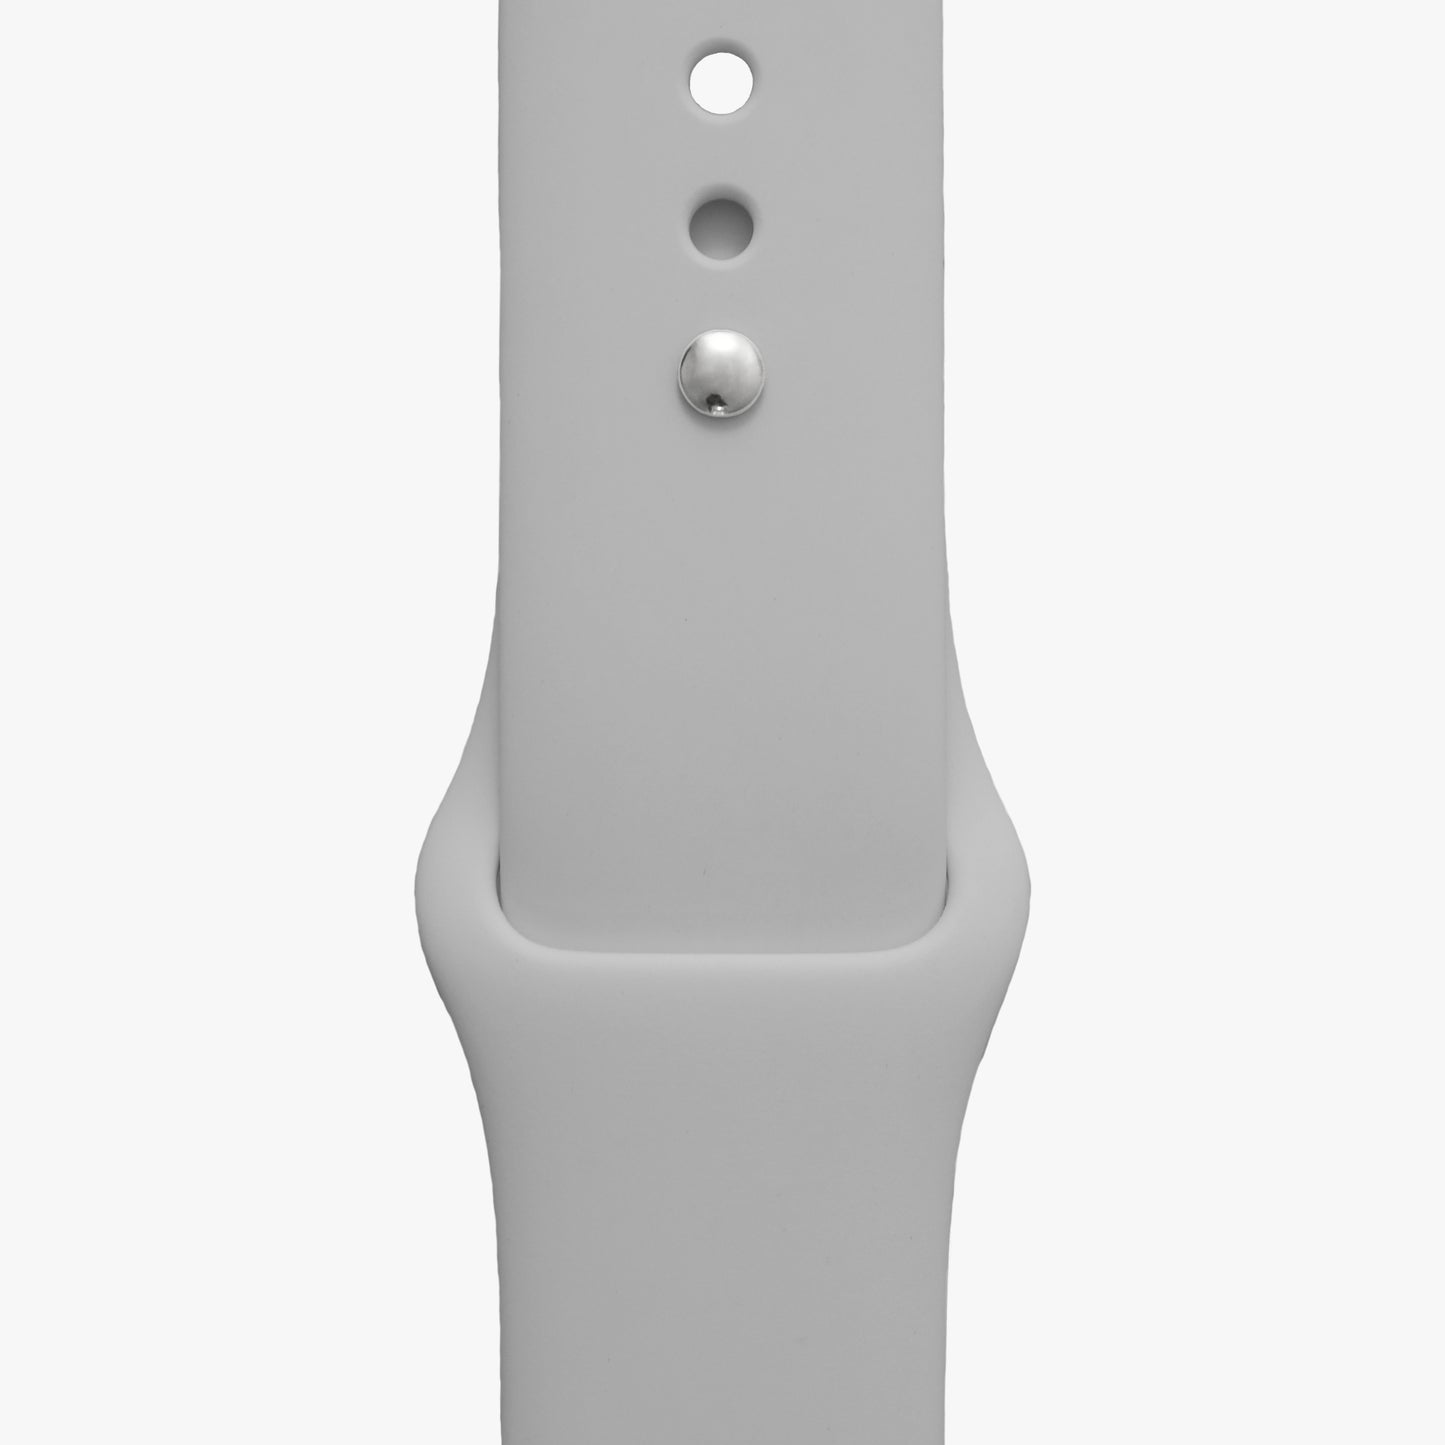 Sportarmband für Apple Watch in hellgrau - 2 Größen in Länge S/M + M/L